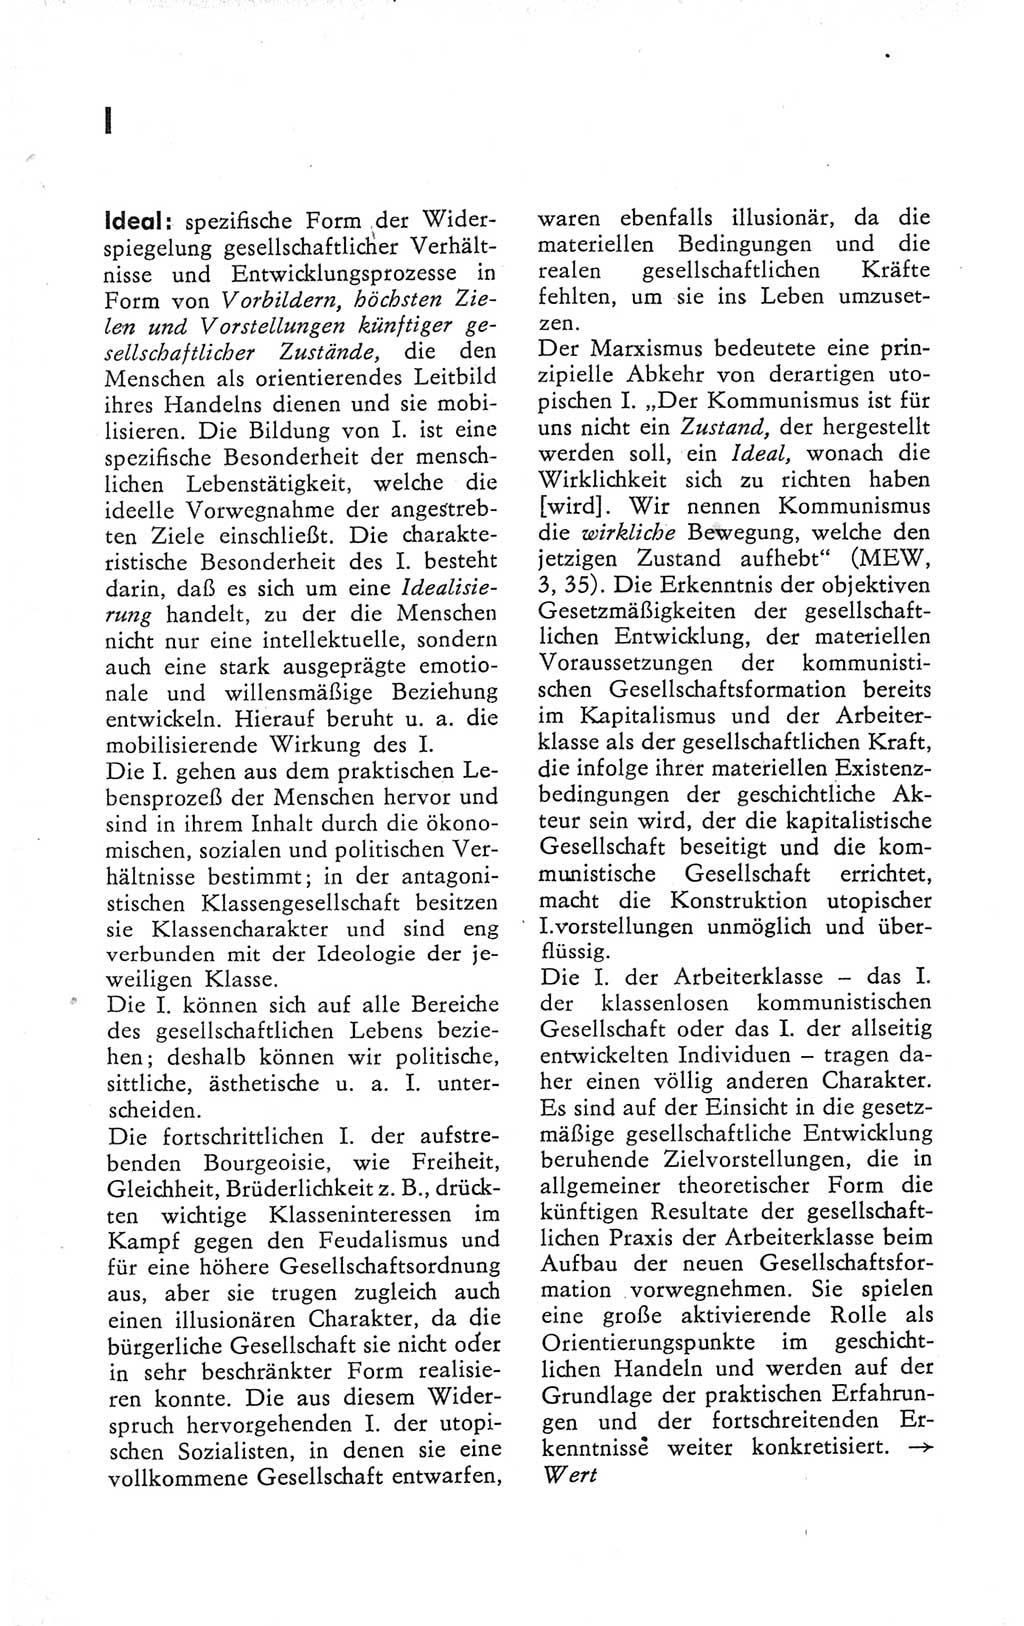 Kleines Wörterbuch der marxistisch-leninistischen Philosophie [Deutsche Demokratische Republik (DDR)] 1979, Seite 154 (Kl. Wb. ML Phil. DDR 1979, S. 154)